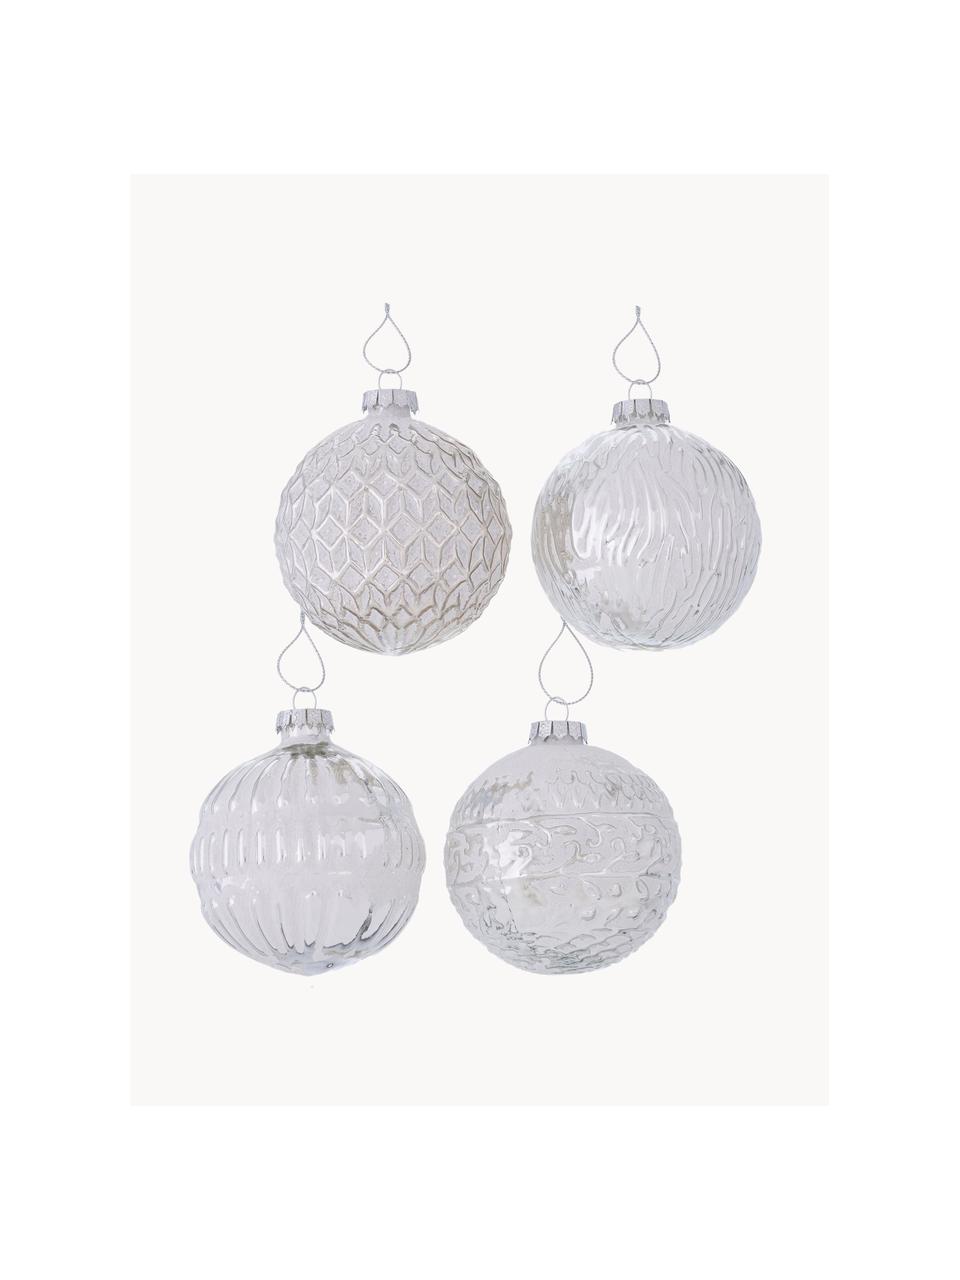 Kerstballen Biela, set van 12, Gelakt glas, Zilverkleurig, wit, Ø 8 x H 8 cm